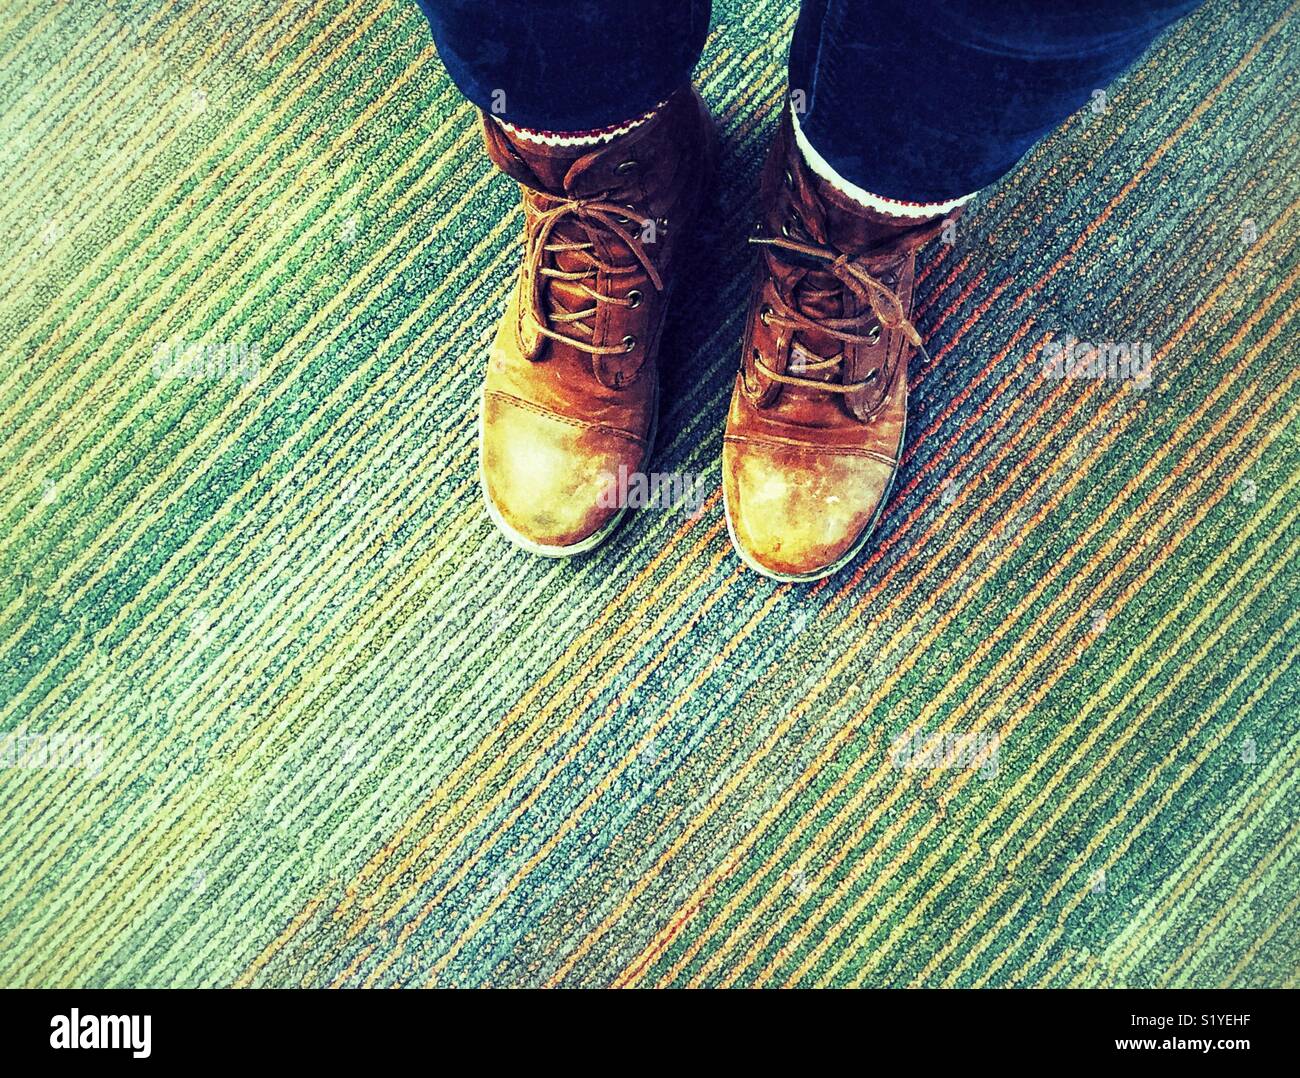 En regardant la plante des pieds portant éraflée, vieux, brown bottes de travail sur un tapis multicolore Banque D'Images